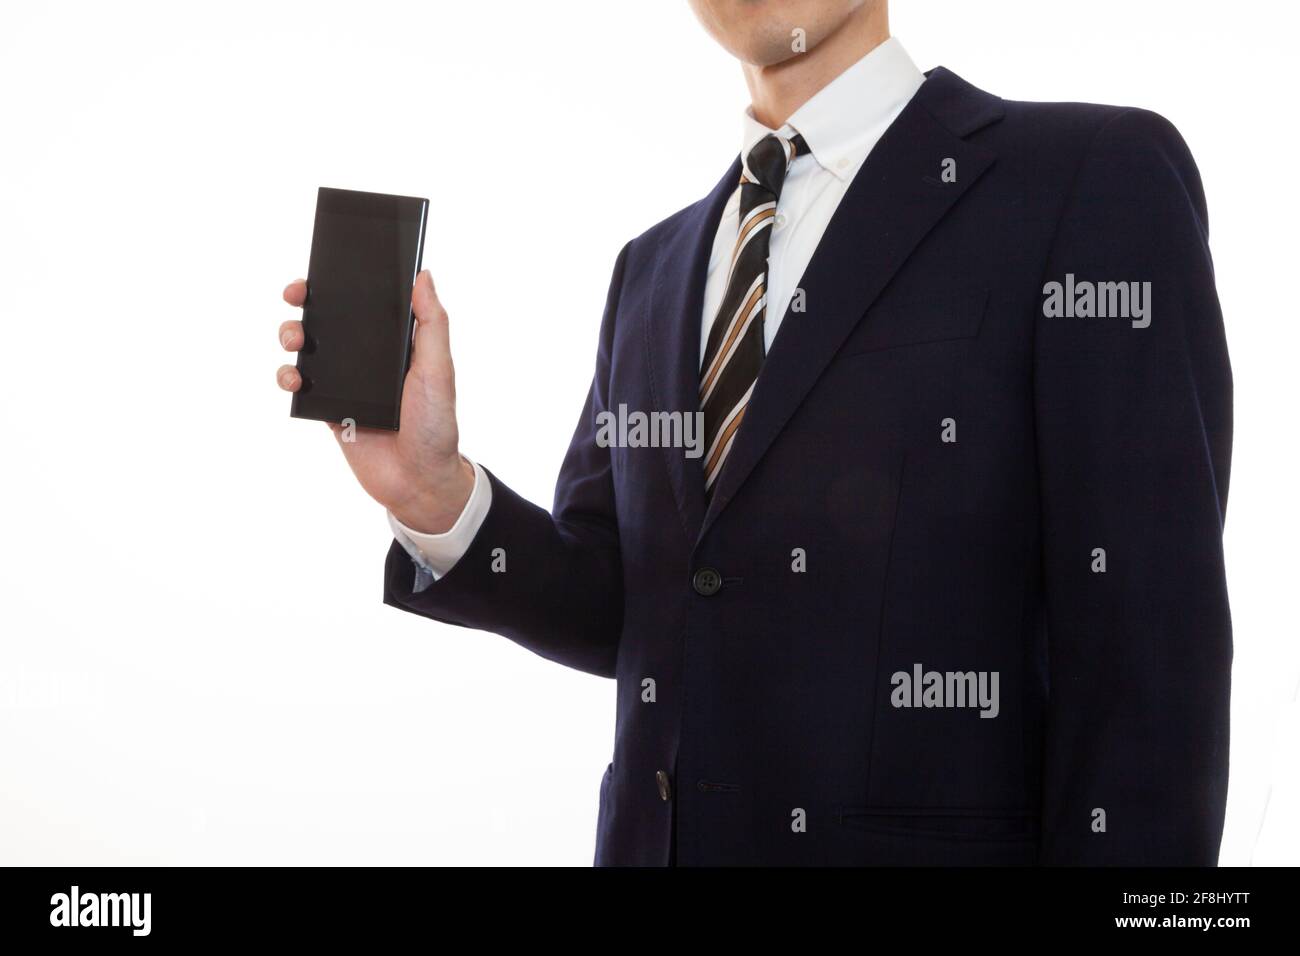 Ein Mann in einem Anzug, der ein Smartphone in seinem Gerät betreibt Rechte Hand Stockfoto